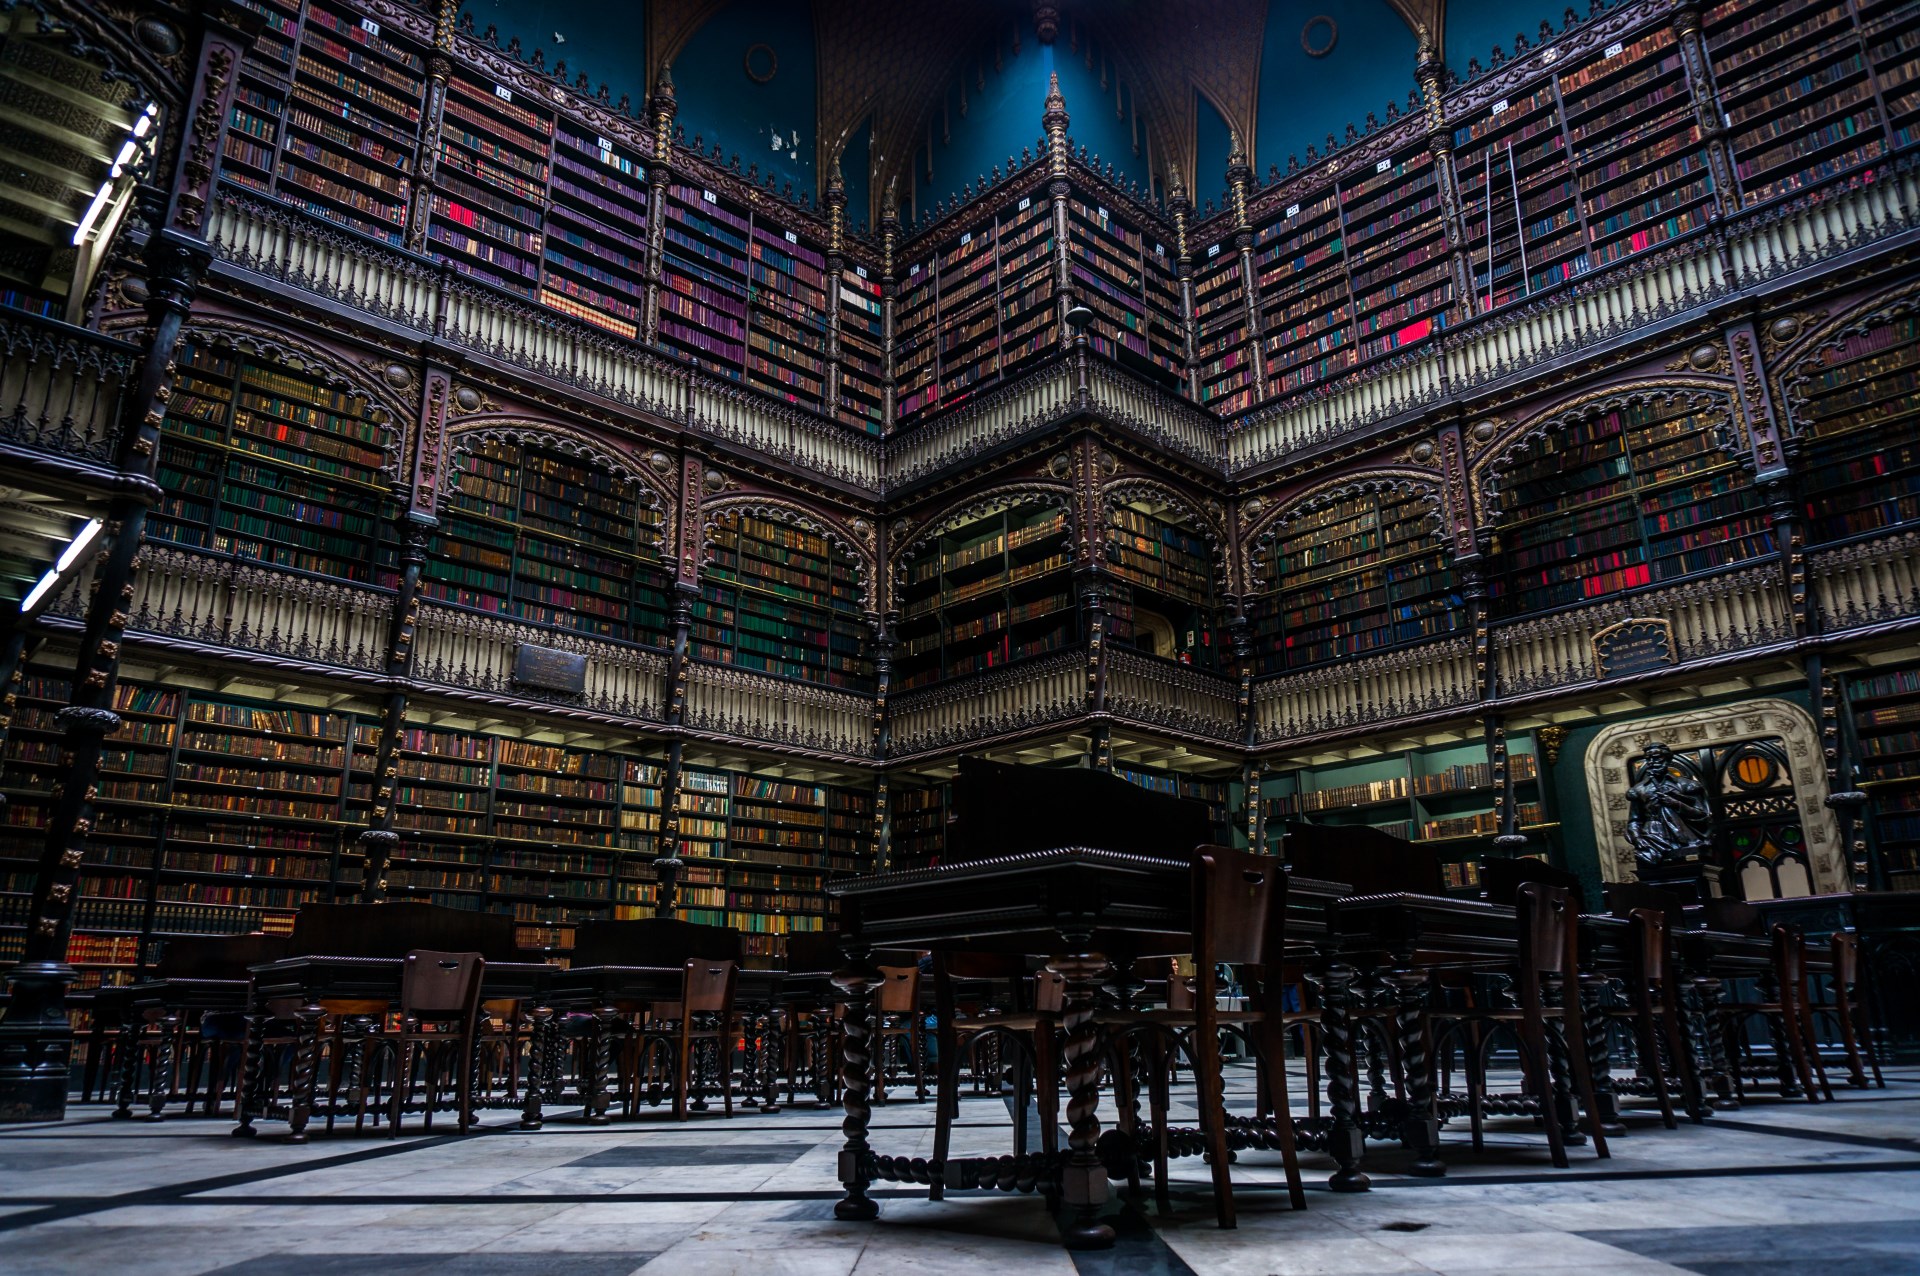 Самая известная библиотека. Португальская Королевская библиотека в Рио-де-Жанейро. Королевская библиотека в Рио де Жанейро. Португальская Королевская библиотека. Португальская Королевская библиотека в Рио⁠⁠.